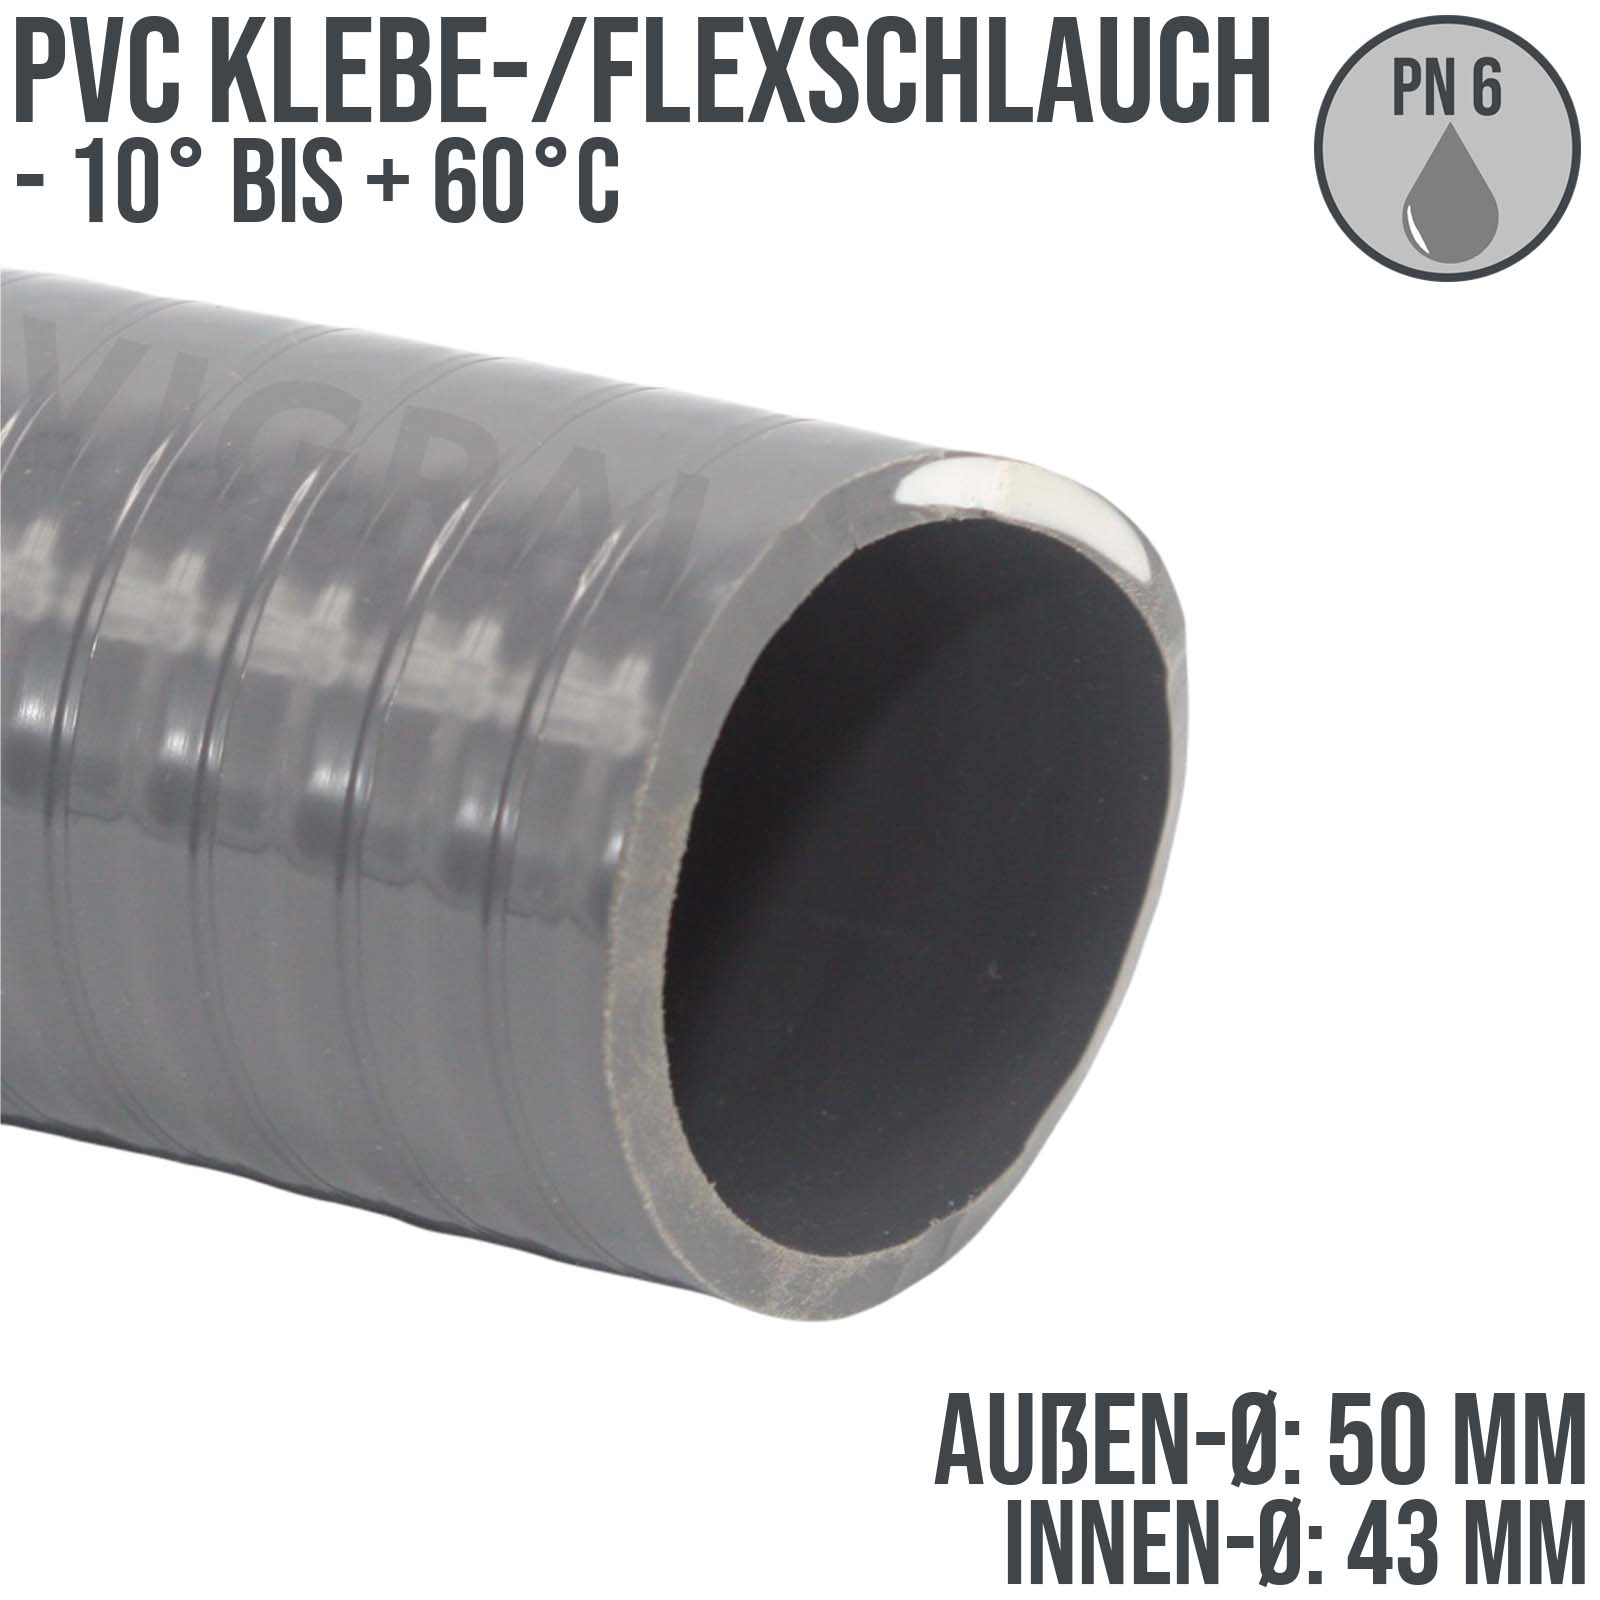 PVC Klebe-/Flexschlauch in grau für den Pool-, Teich und